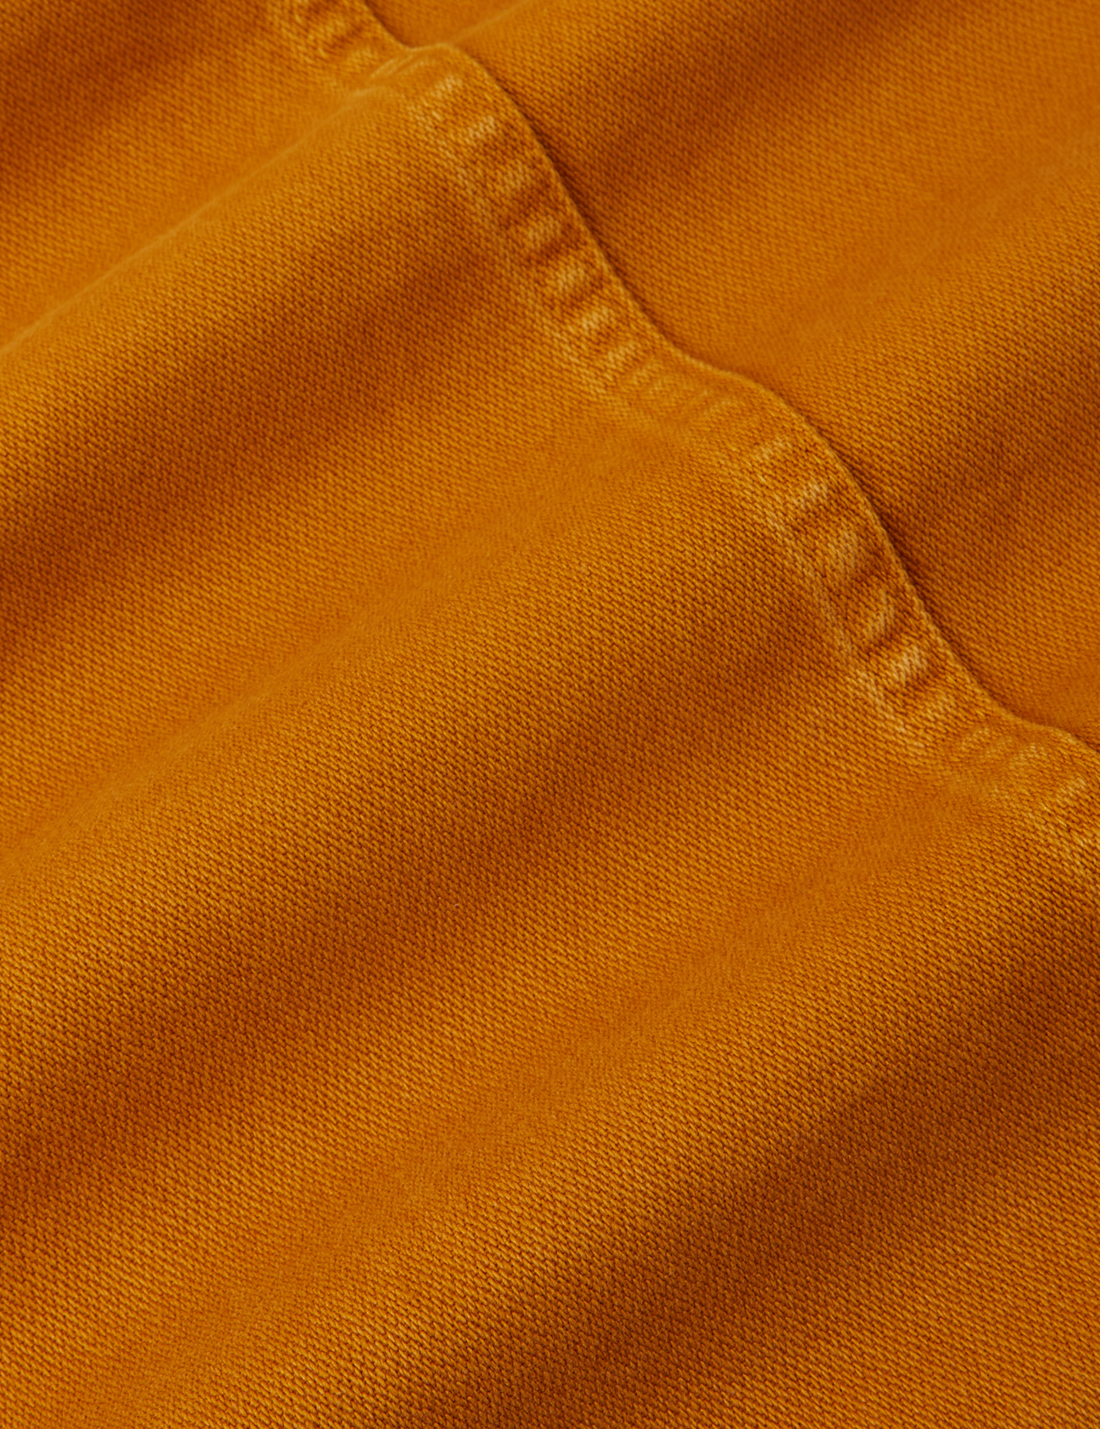 Denim Work Jacket in Spicy Mustard fabric detail